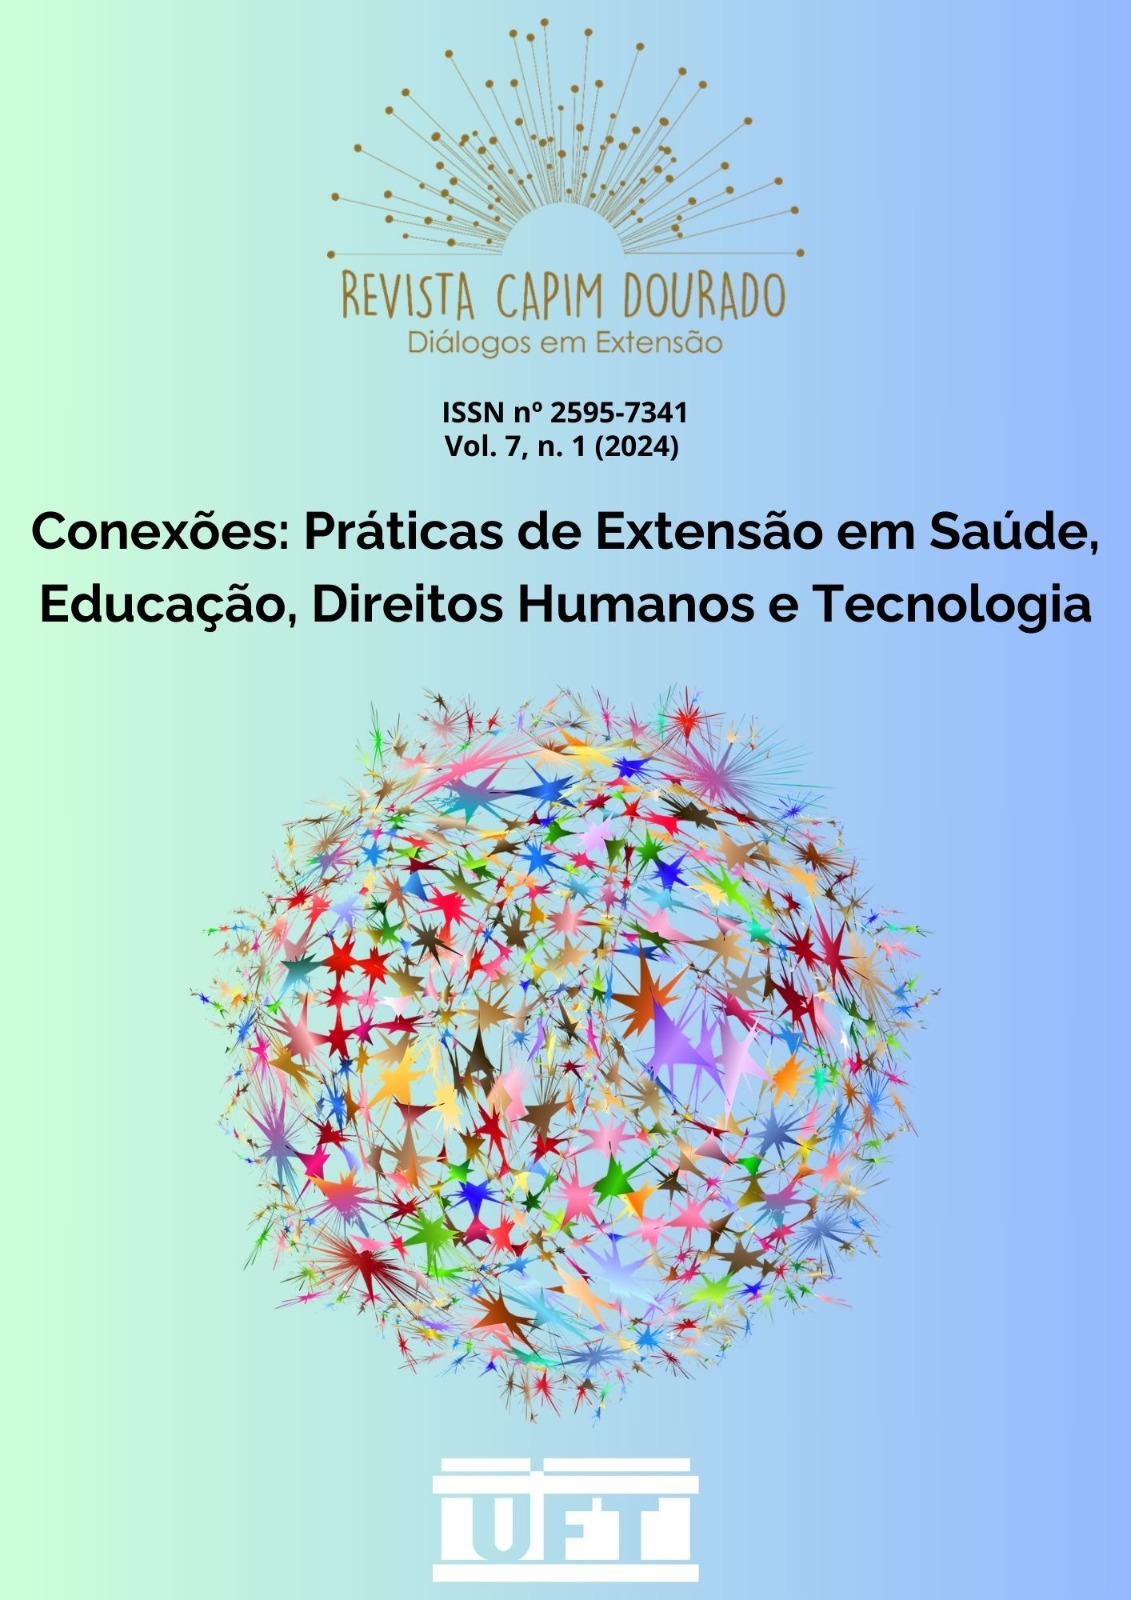 Capa de revista Capim Dourado: Diálogos em Extensão, edição com o tema "Conexões: Práticas de Extensão em Saúde, Educação, Direitos Humanos e Tecnologia.